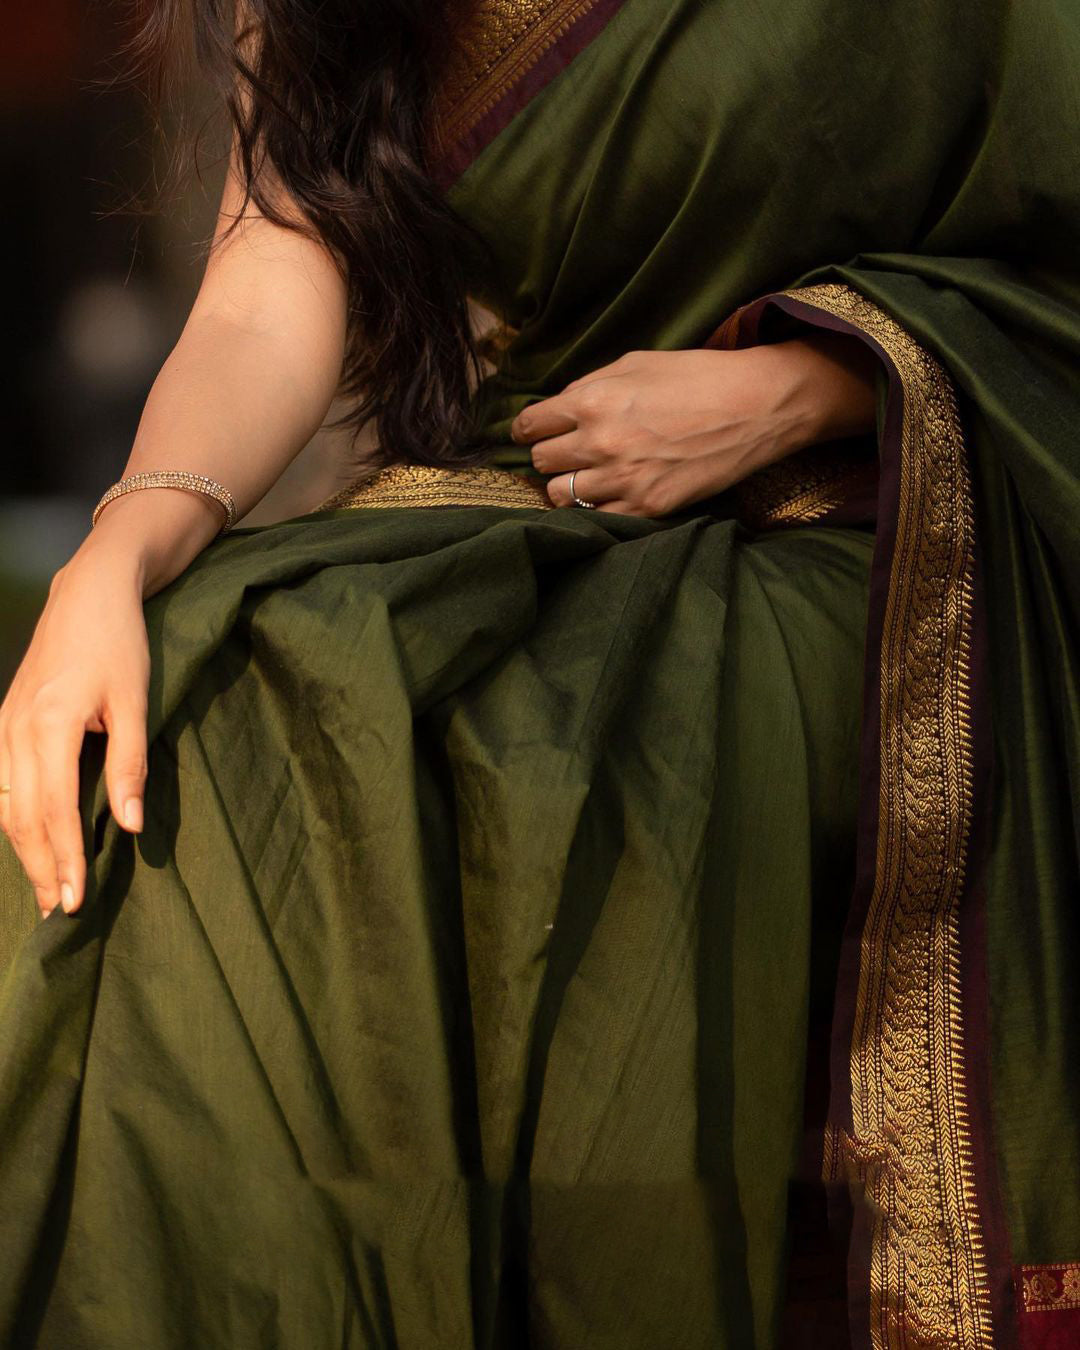 Elaborate Green Soft Banarasi Silk Saree With Proficient Blouse Piece